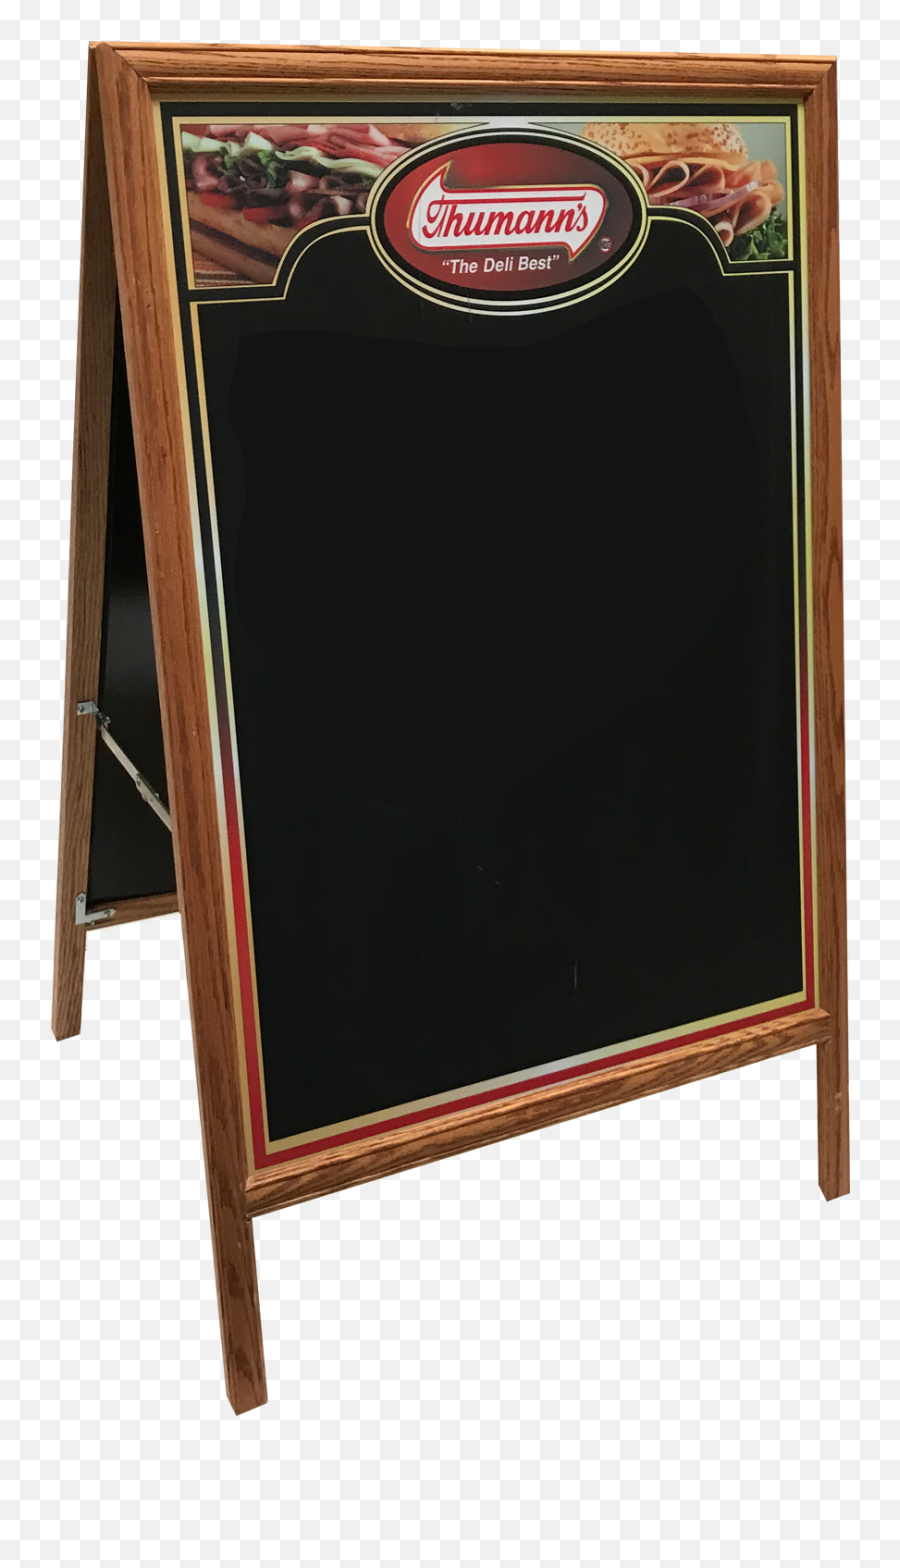 Download Chalkboard Frame Png Image - Plywood,Chalkboard Frame Png